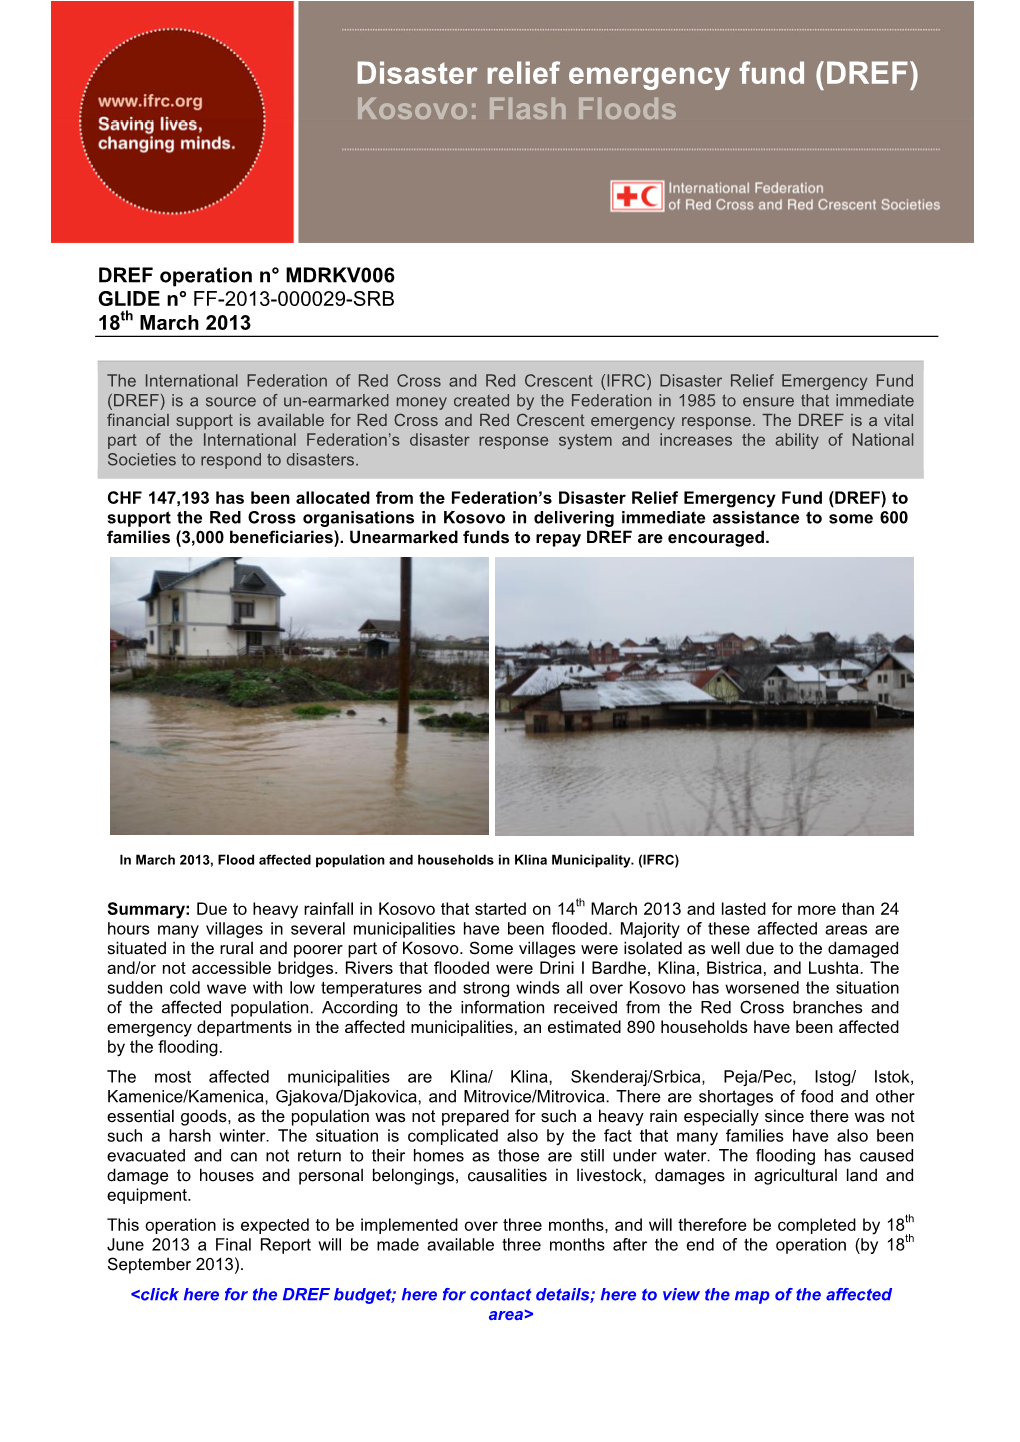 Disaster Relief Emergency Fund (DREF) Kosovo: Flash Floods